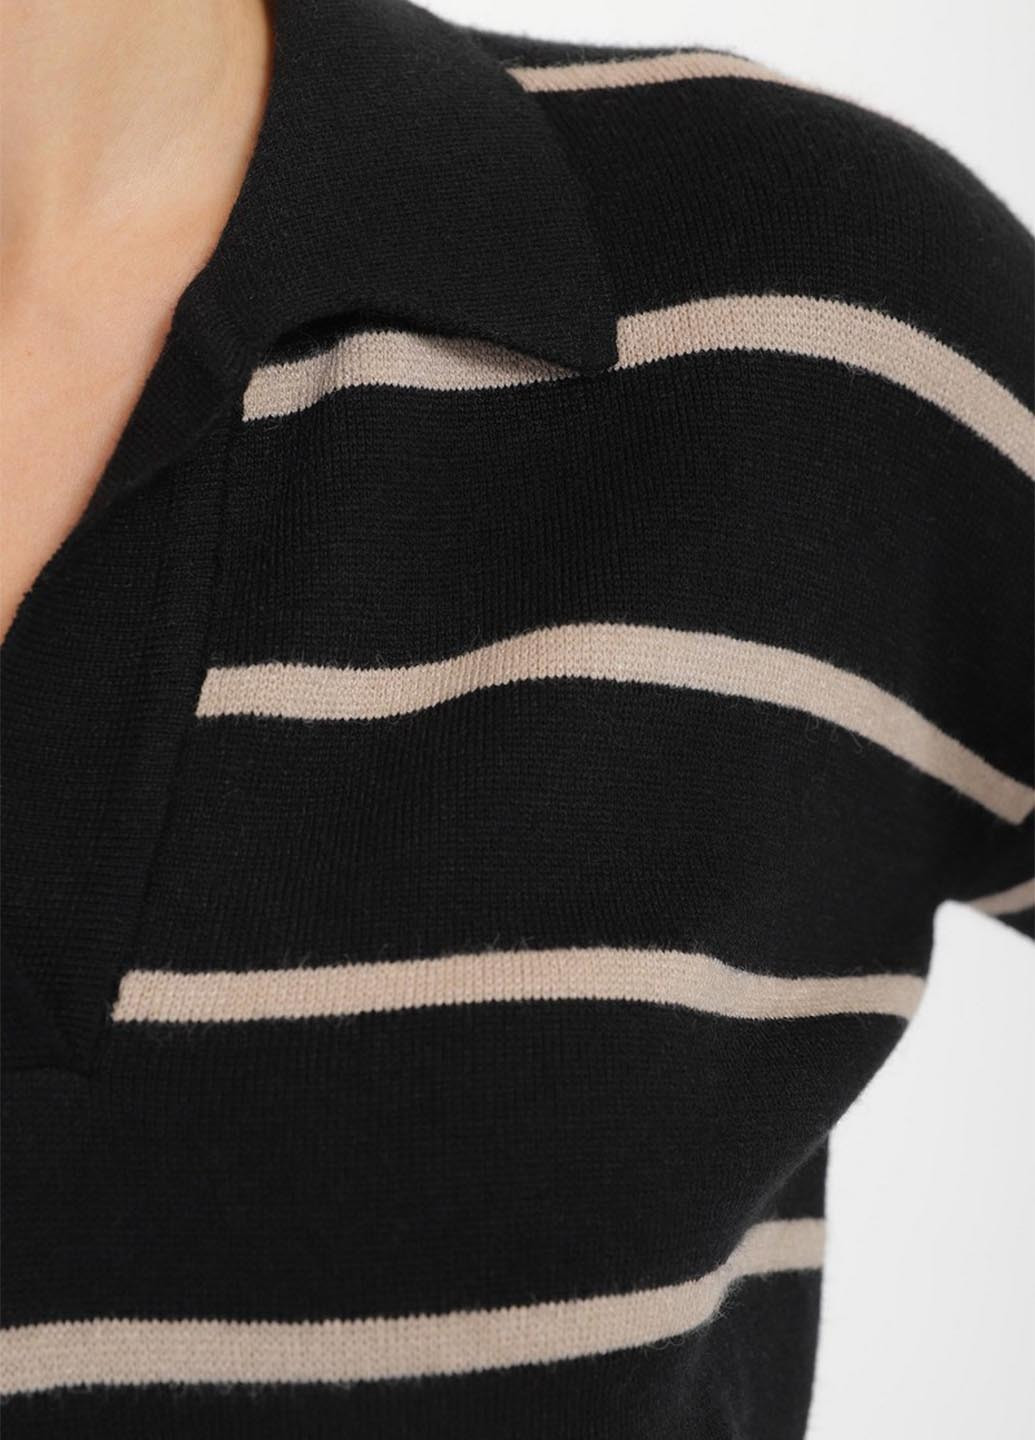 Комбинированный демисезонный свитер пуловер Sewel